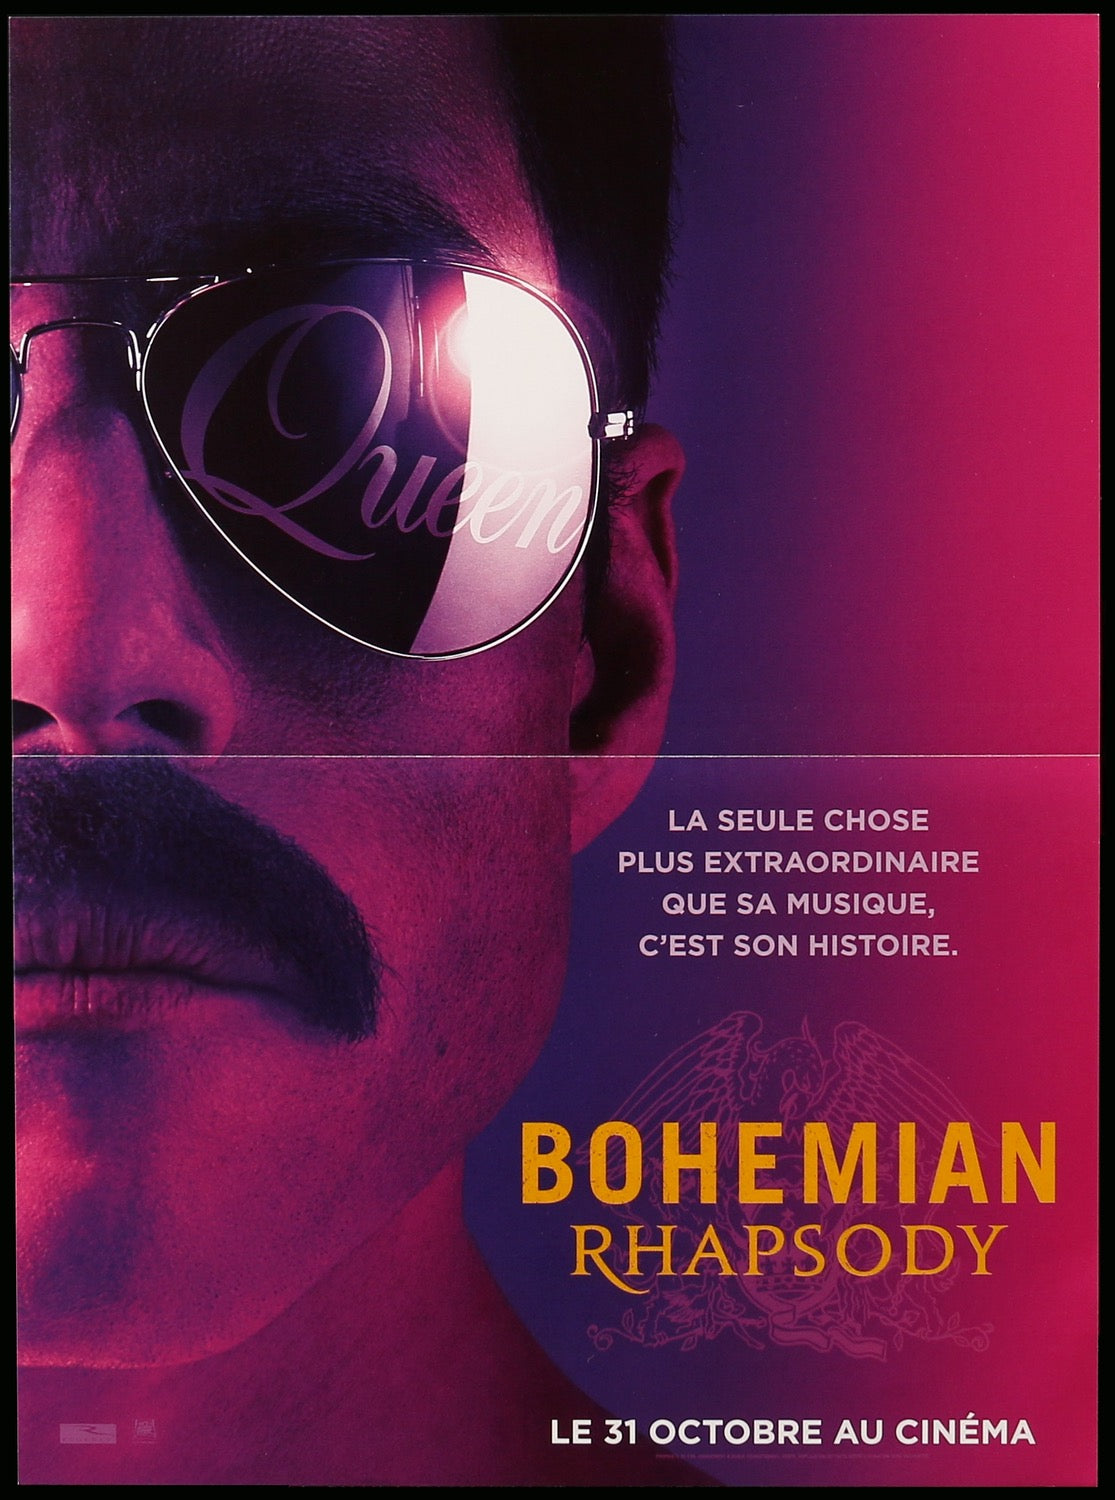 Bohemian Rhapsody (2018) original movie poster for sale at Original Film Art